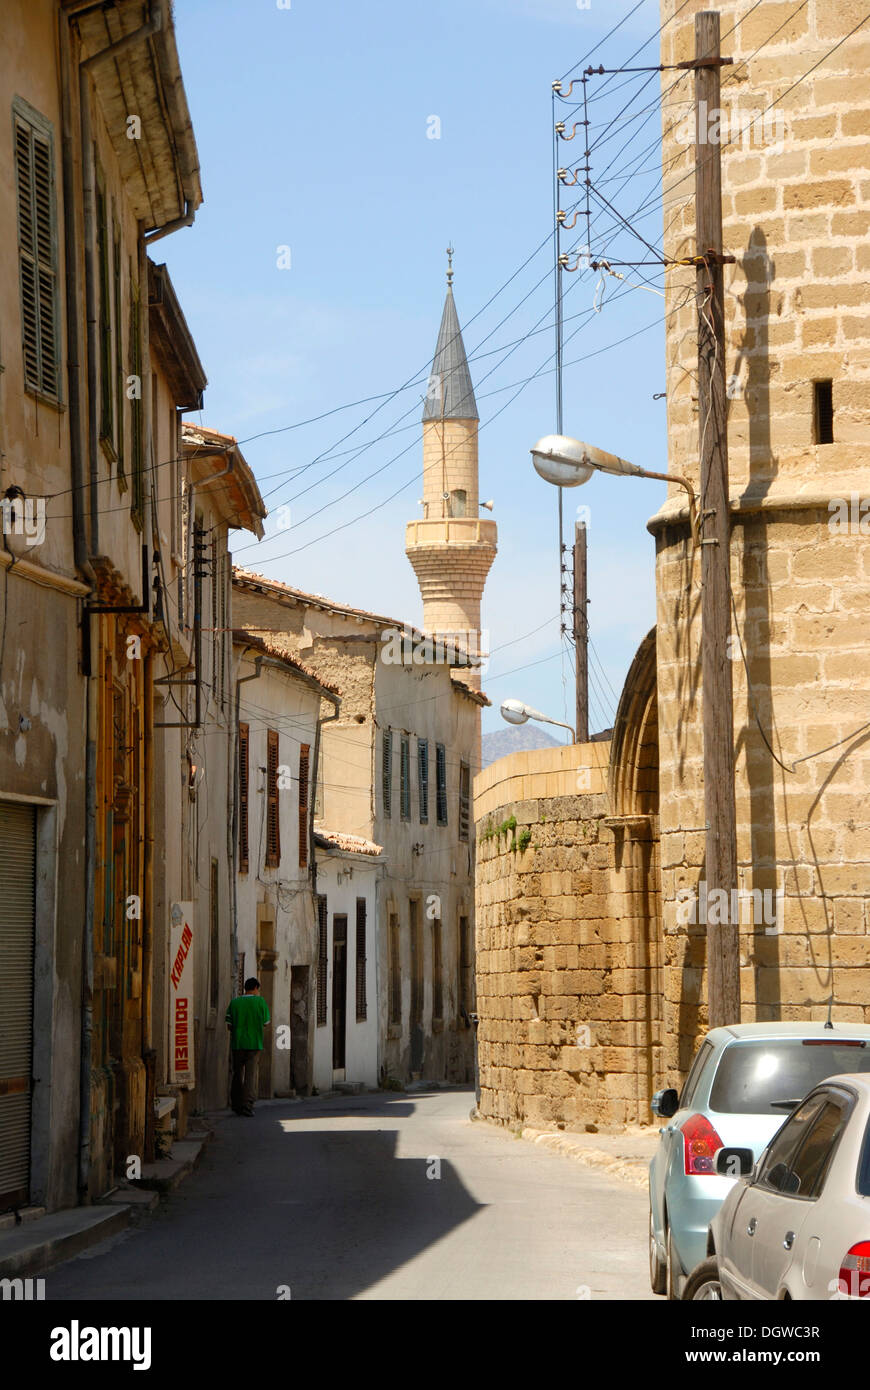 Ruelle de la vieille ville avec le minaret d'une mosquée, Nicosie, Lefkosa, République turque de Chypre du Nord, Chypre, Méditerranéenne Banque D'Images